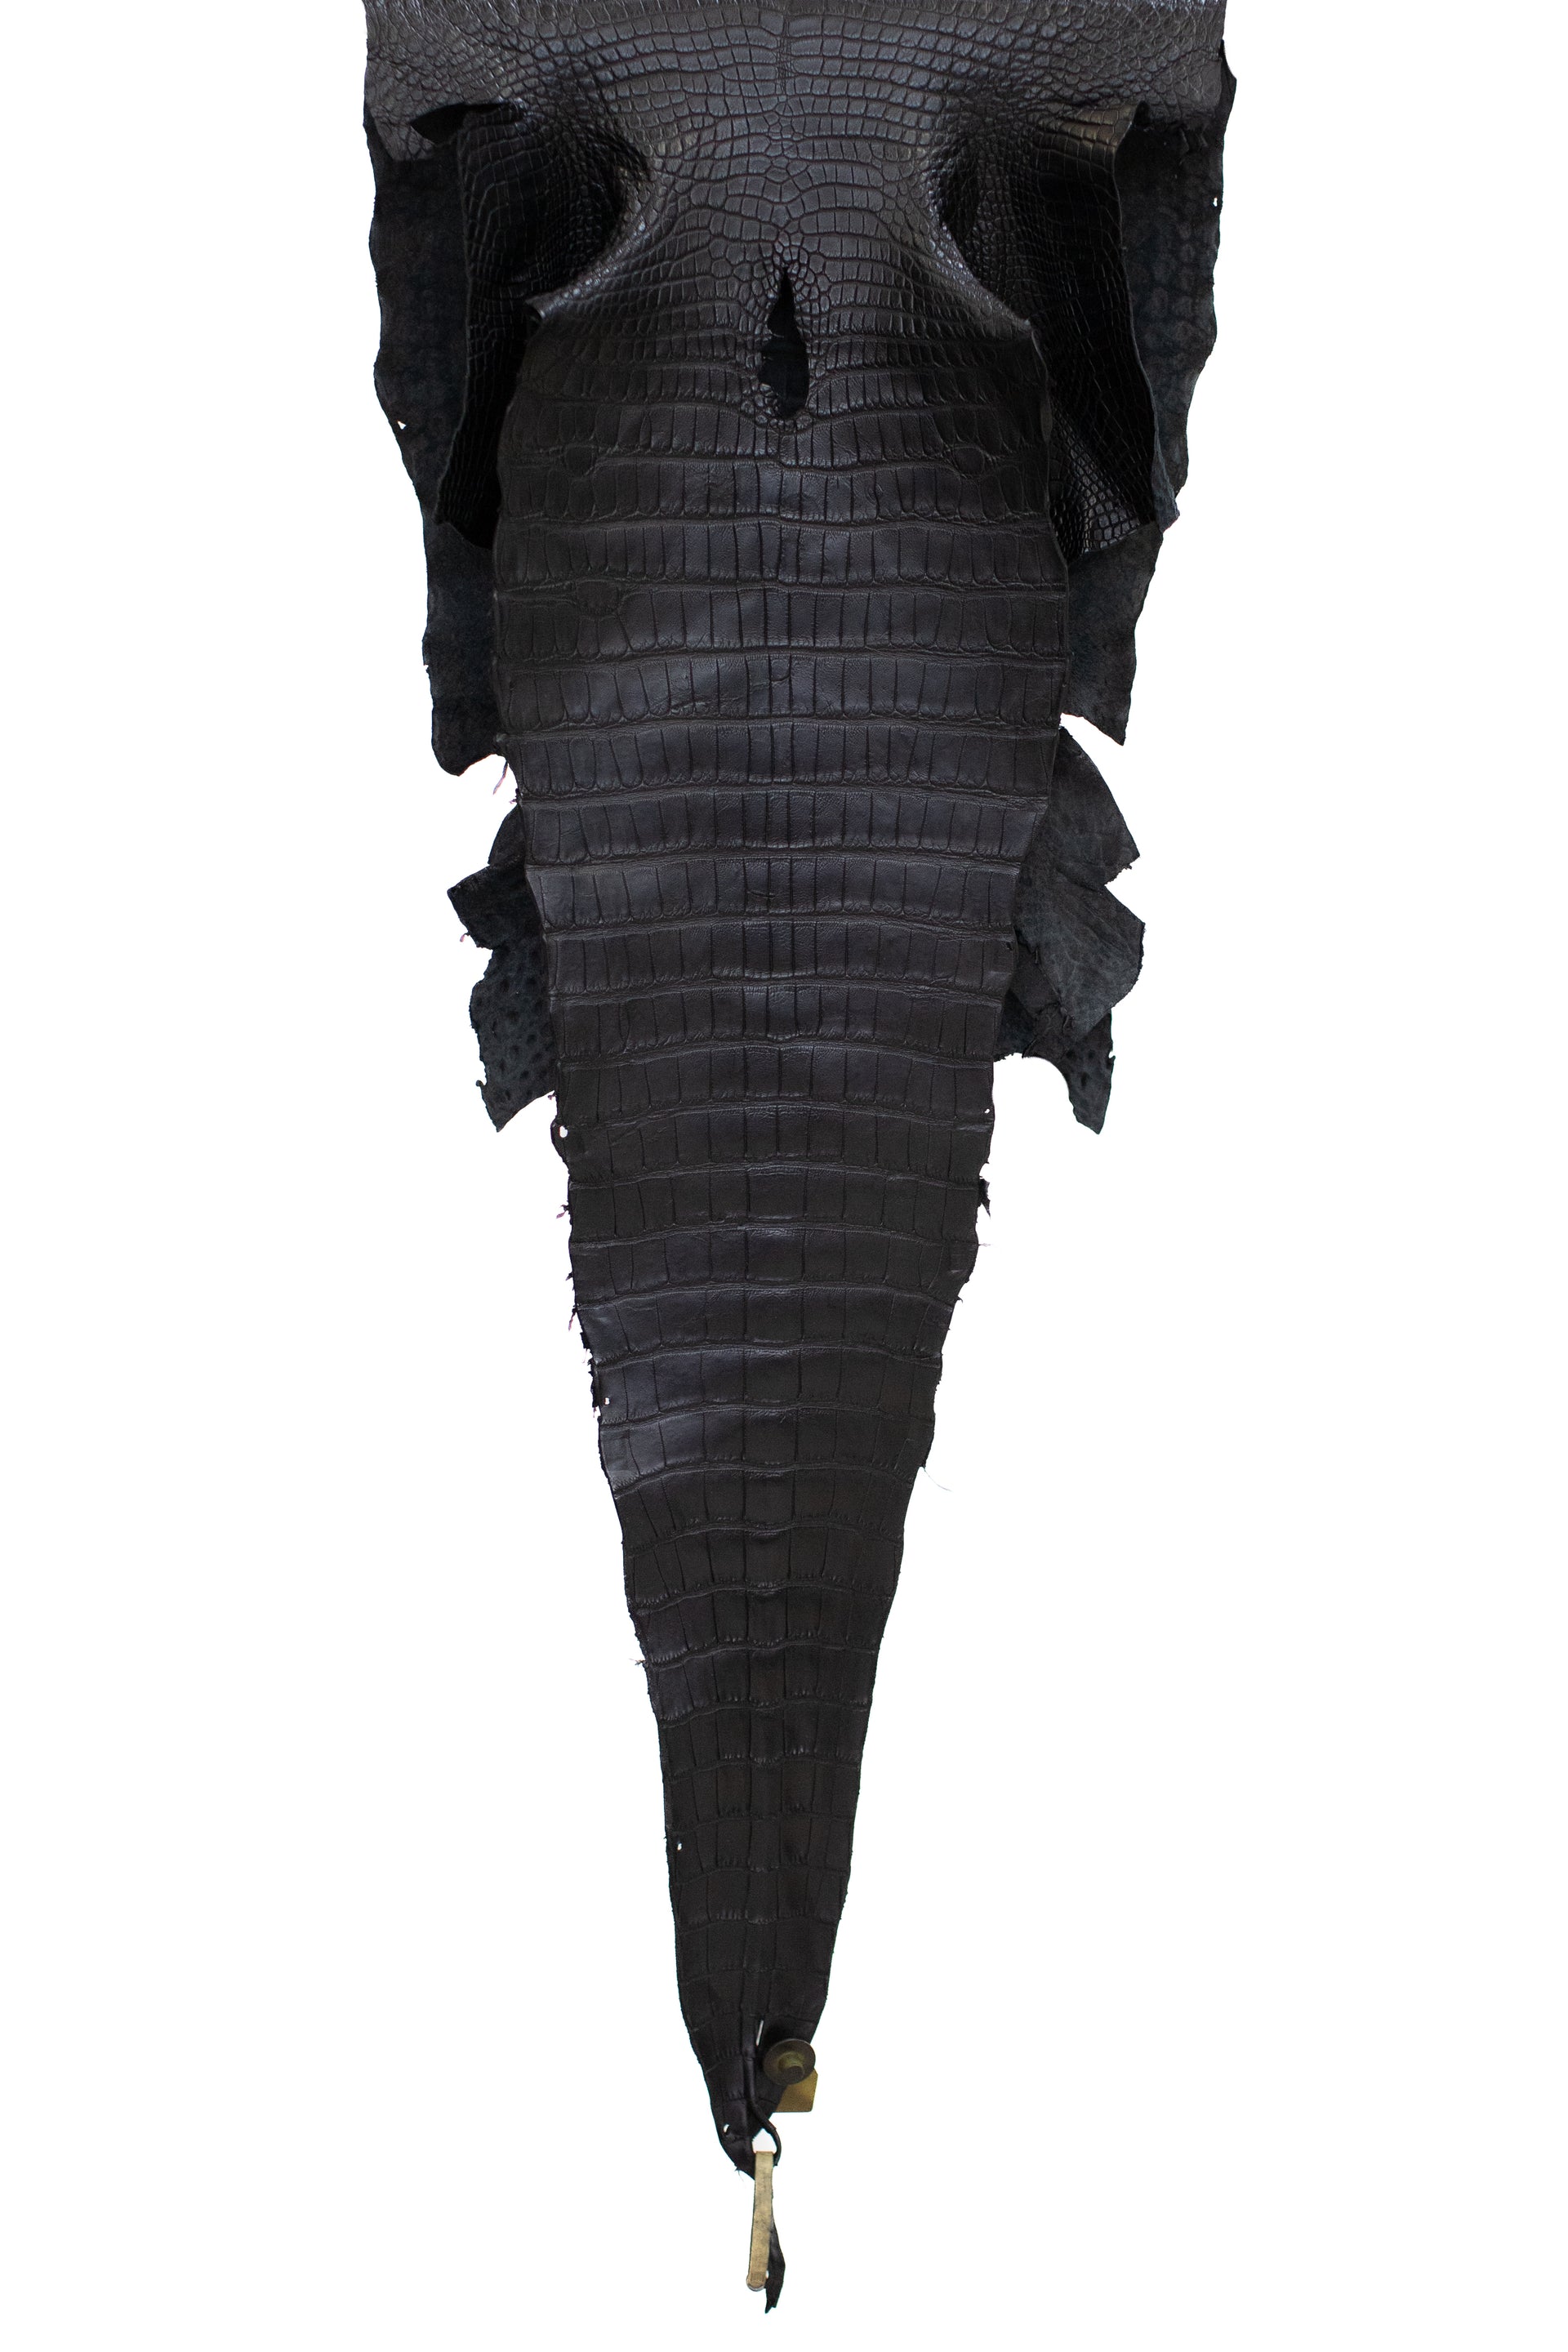 43 cm Grade 2/3 Black Matte Wild American Alligator Leather - Tag: LA16-0010601